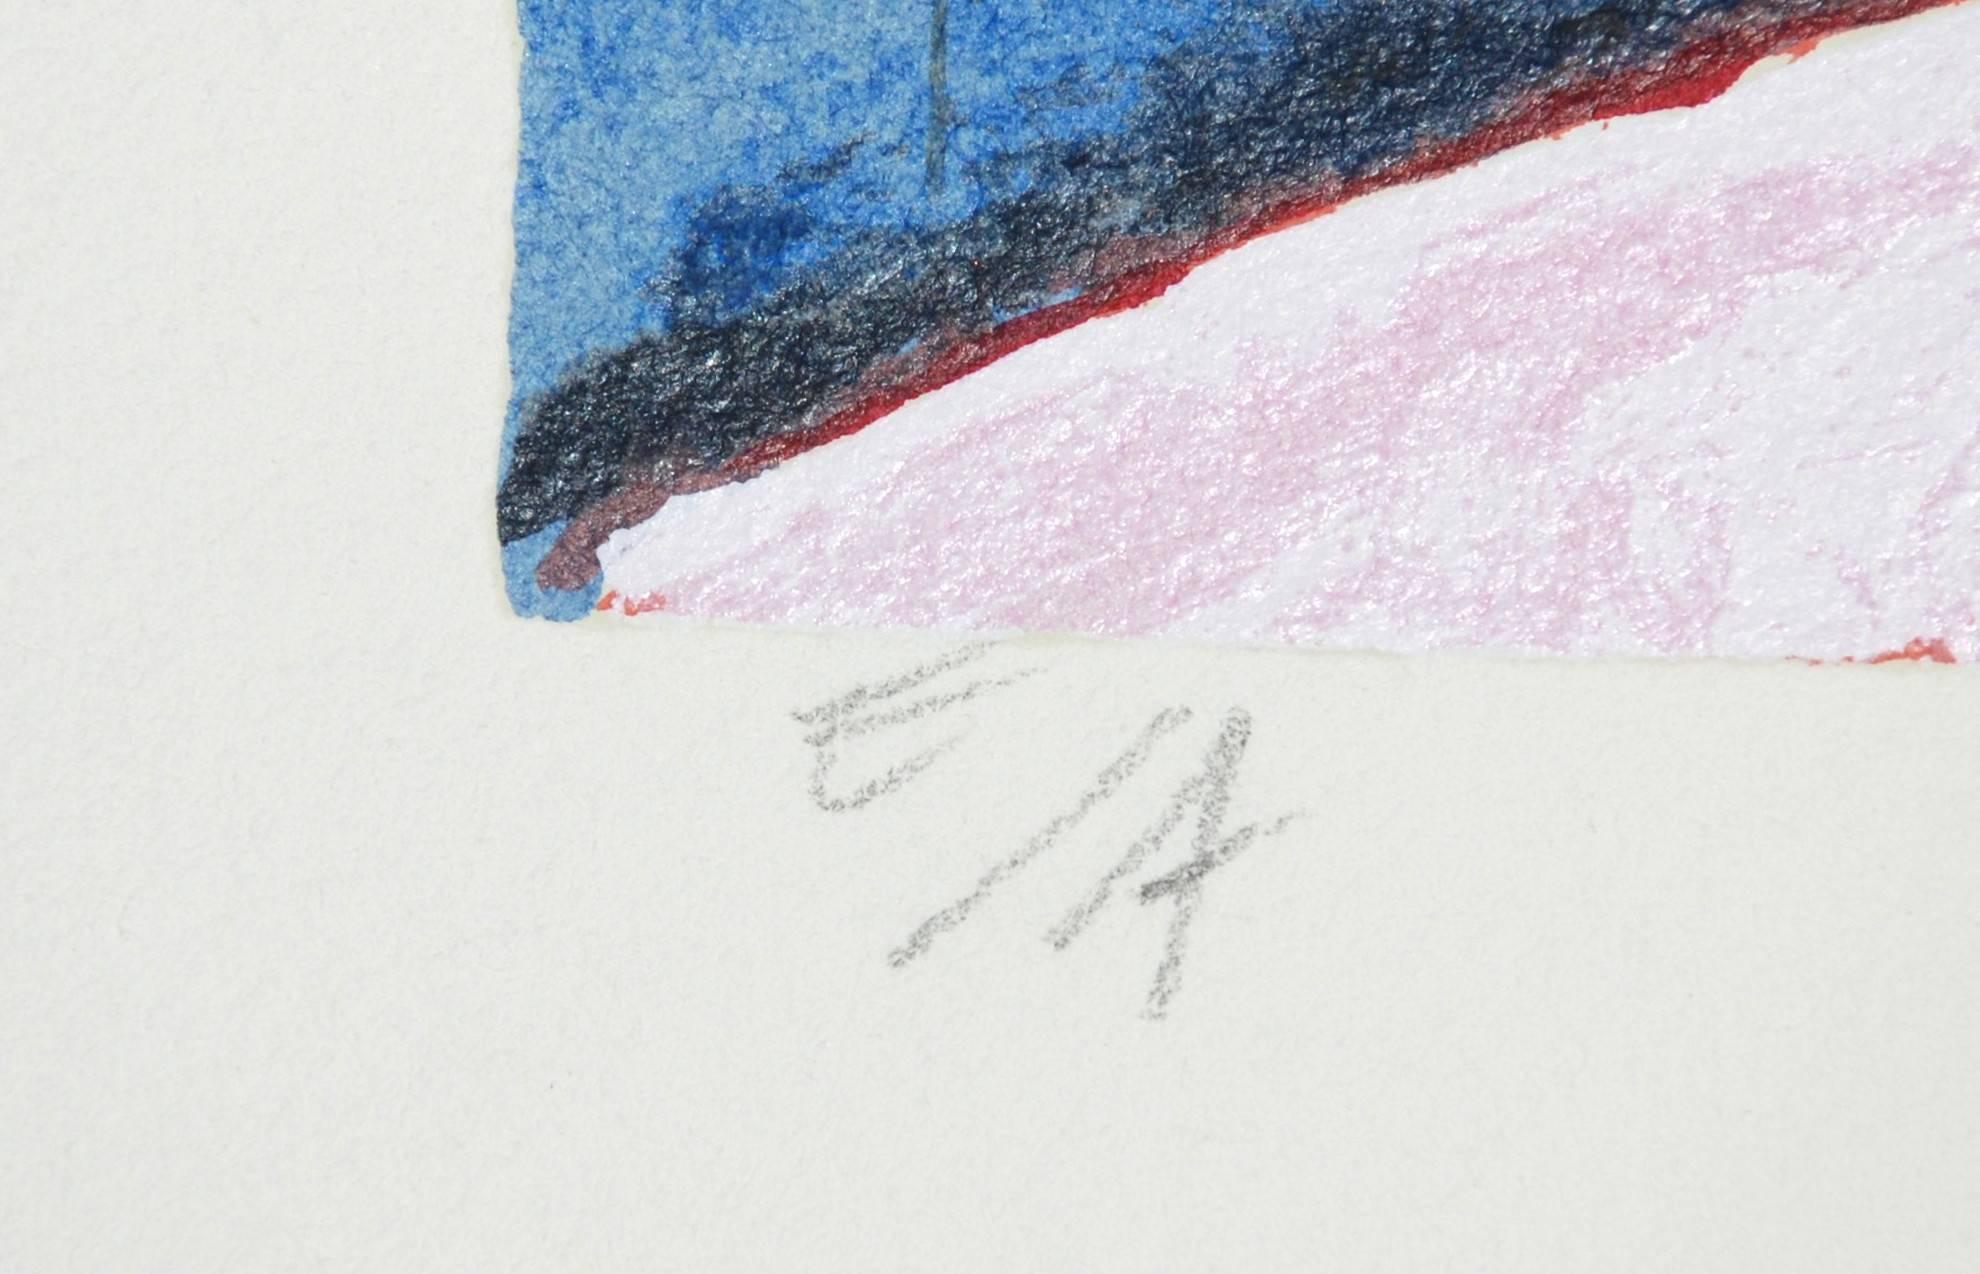 Konijn op muziekpapier (Rabbit on Music Paper) - Blue Abstract Print by Corneille